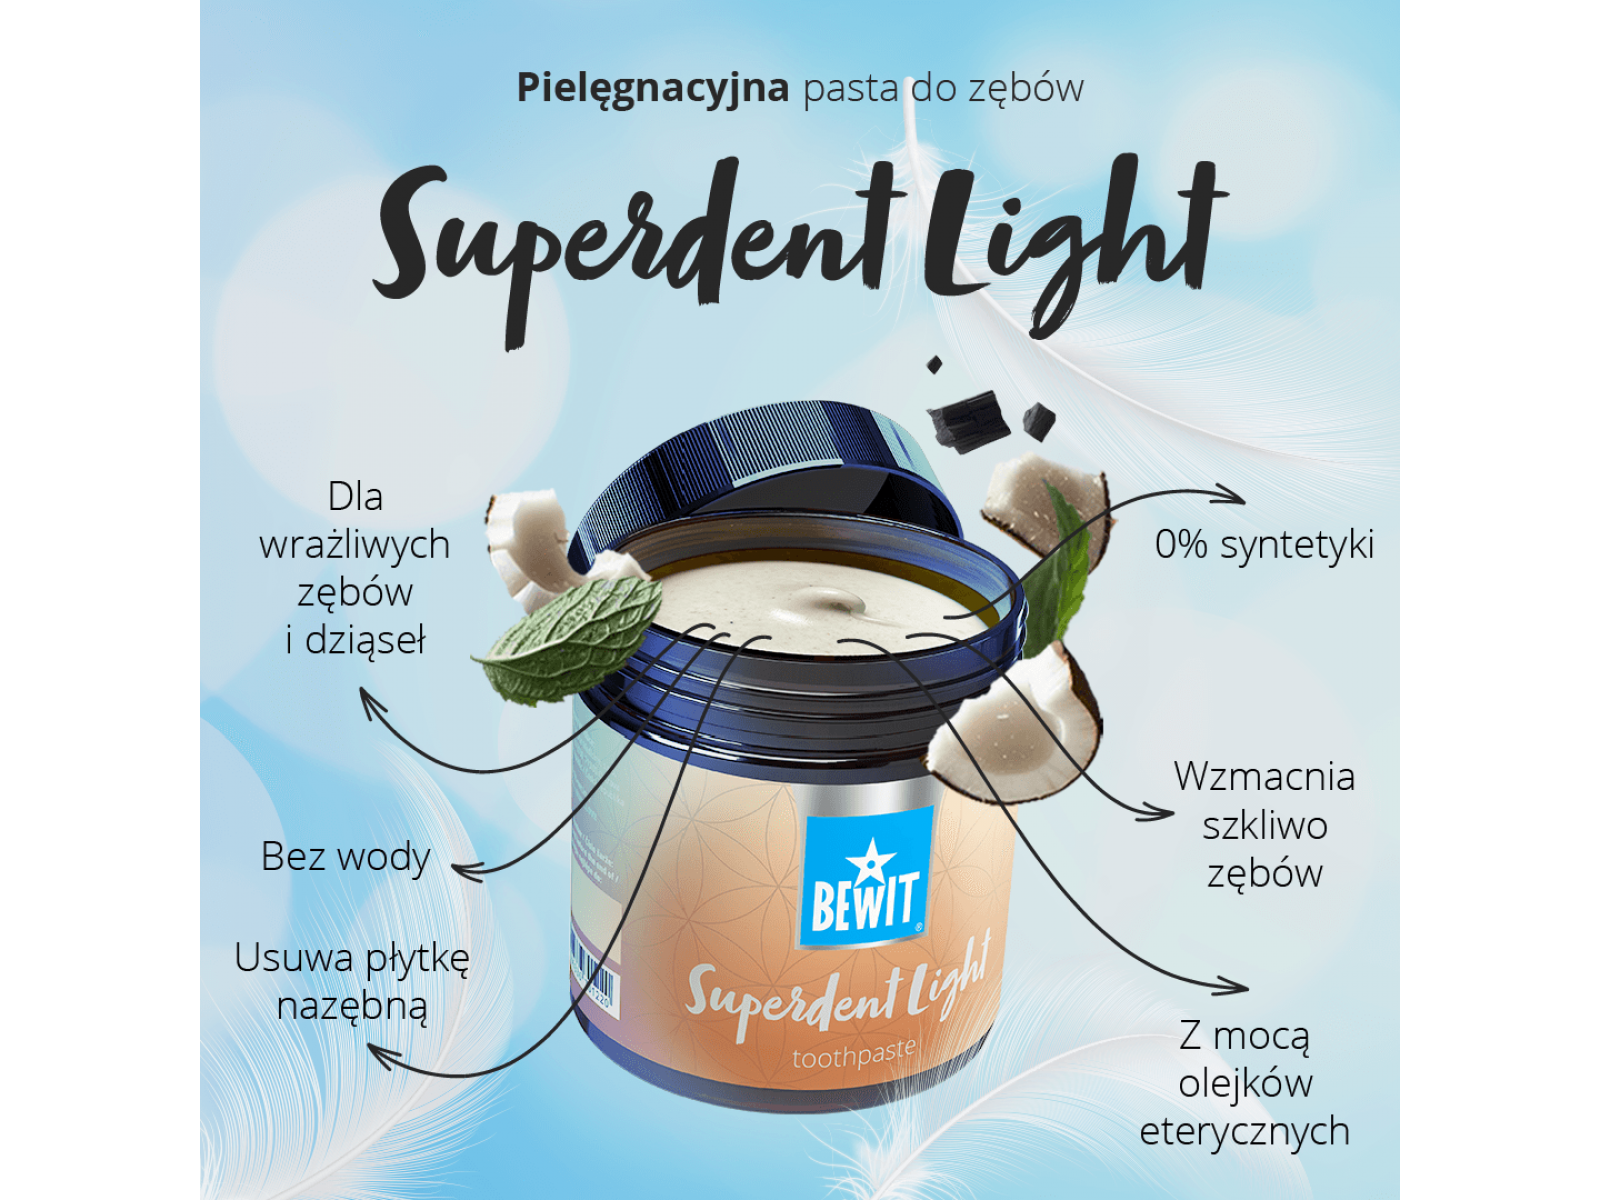 BEWIT Superdent Light - Pielęgnacyjna pasta do zębów - 6